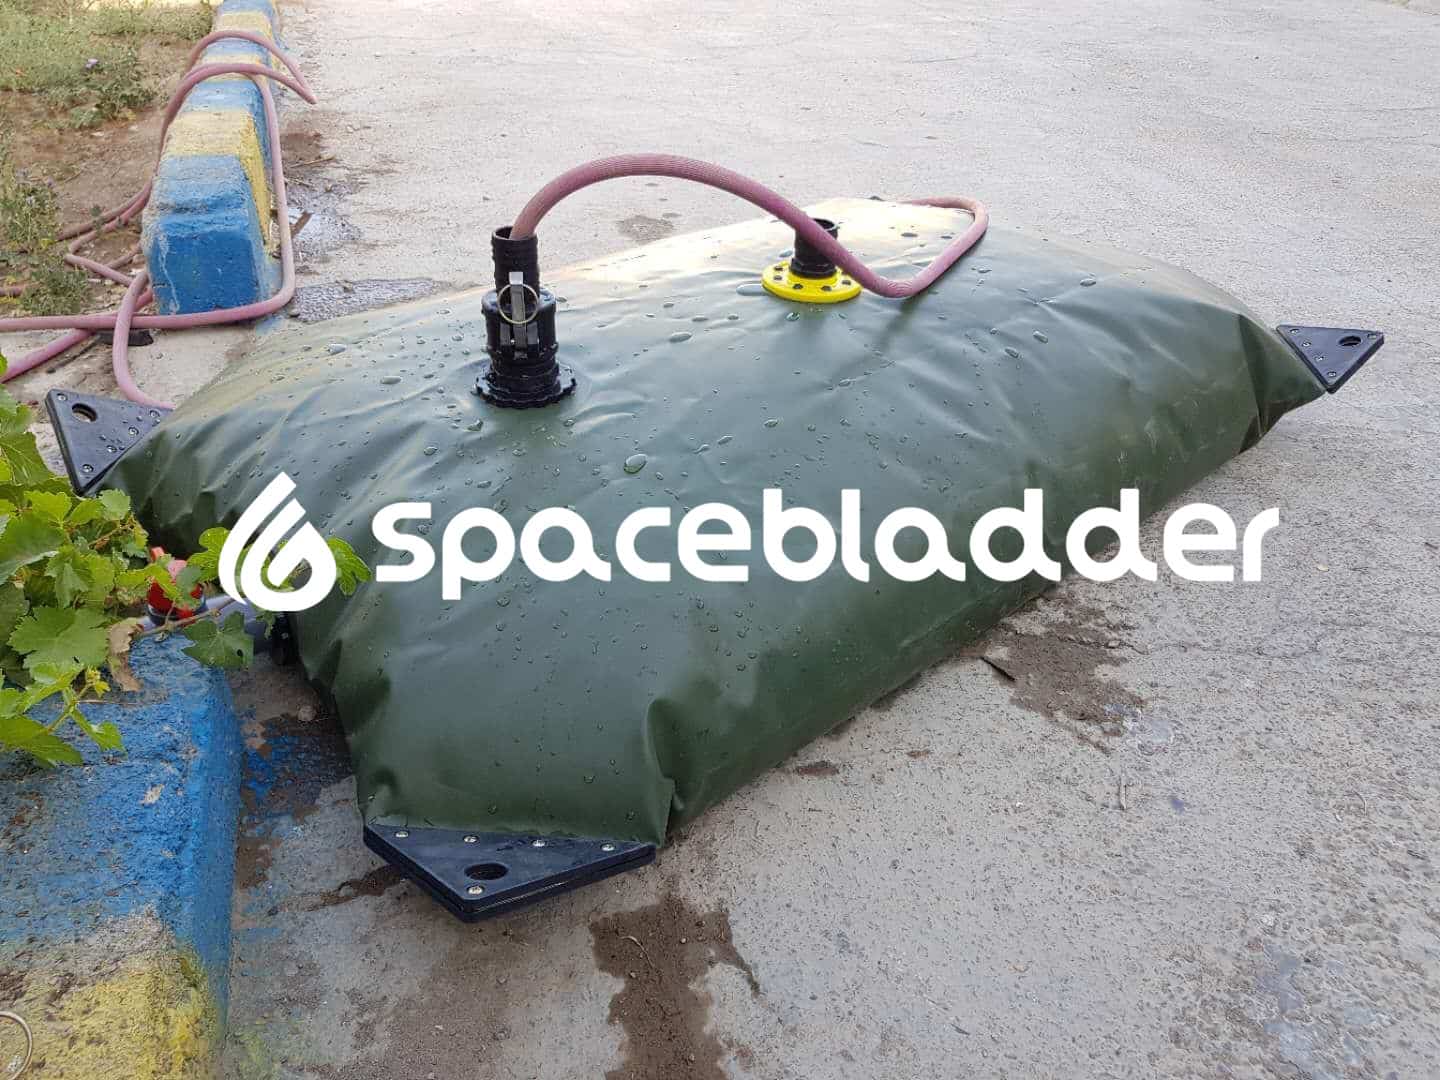 SpaceBladder TPU Pillow Water Tank for House Water Saving Purpose